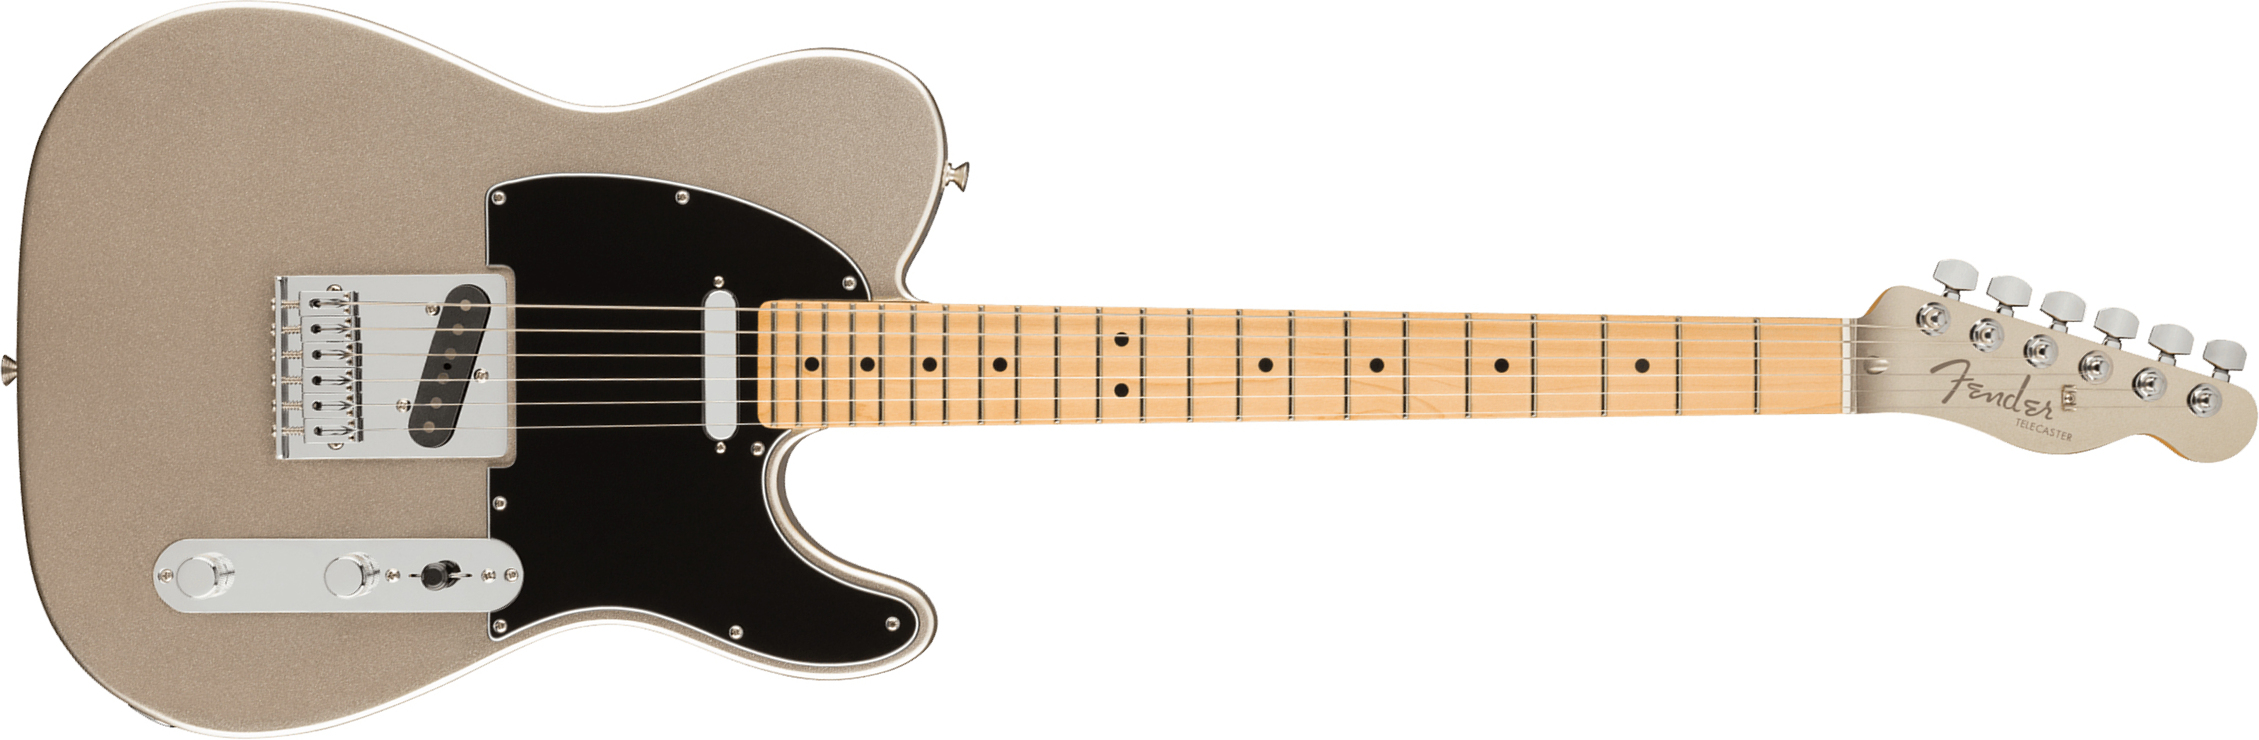 Fender Tele 75th Anniversary Ltd Mex Mn - Diamond Anniversary - Guitarra eléctrica con forma de str. - Main picture